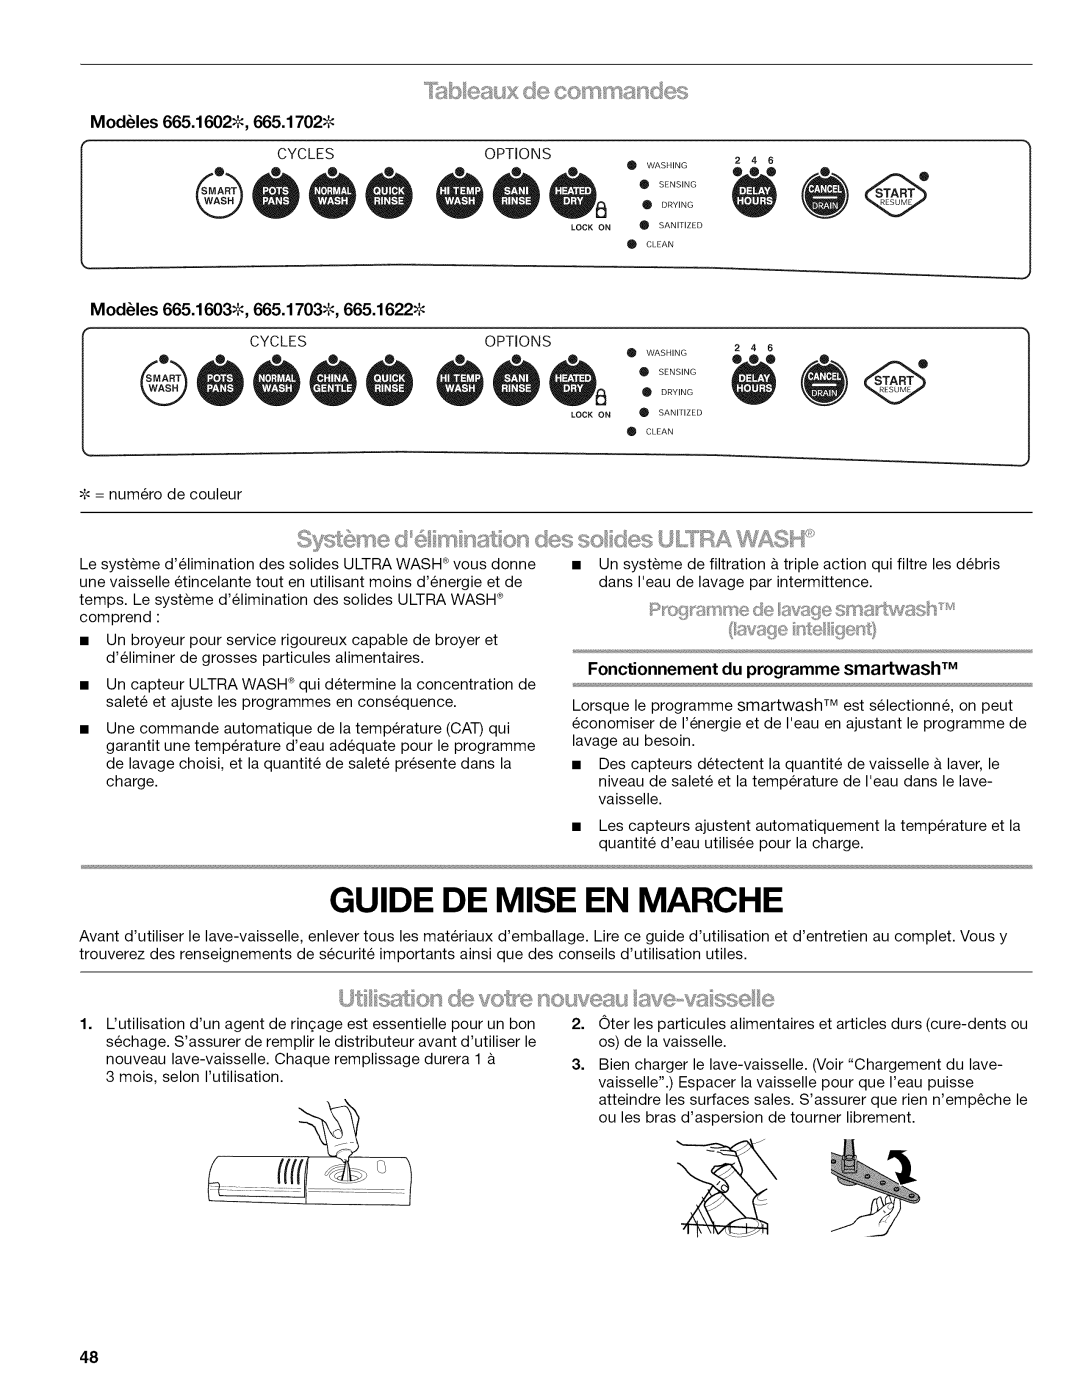 Kenmore 665.1622 manual Guide De Mise En Marche, f,;A, Ut ssi ton, nouv, u sse, , ssee, _y_b eau,× de co_ssma ees 